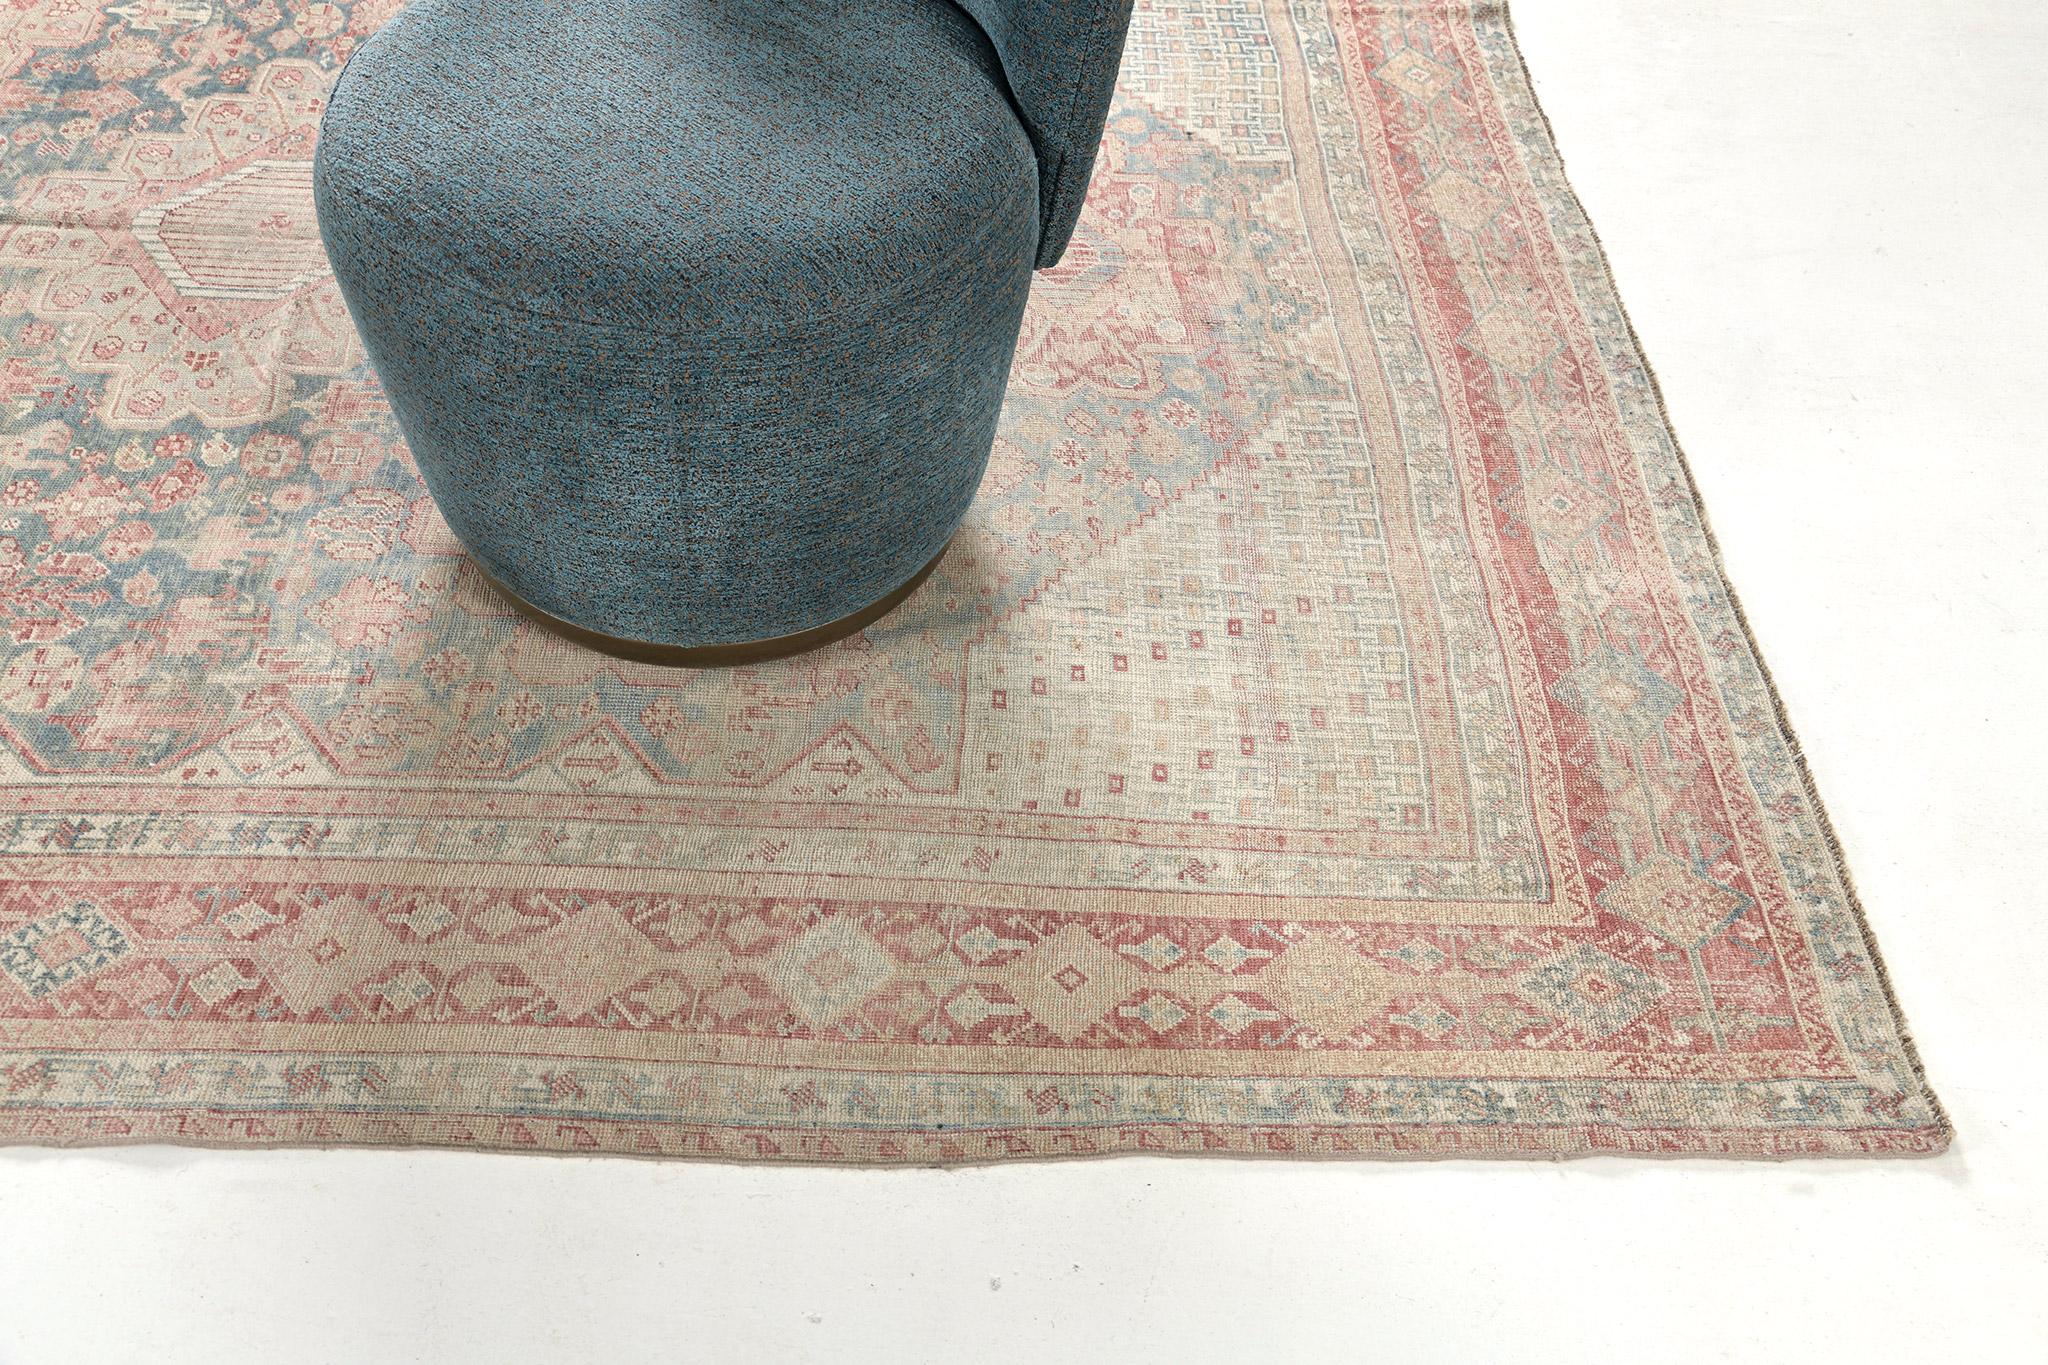 Ce tapis ancien persan Shiraz présente un époustouflant motif botanique en alternance. Cette œuvre d'art séduisante se caractérise par des tons agréables de cannelle, de bleu égéen, de rouille et d'ivoire. Parfait pour un large éventail